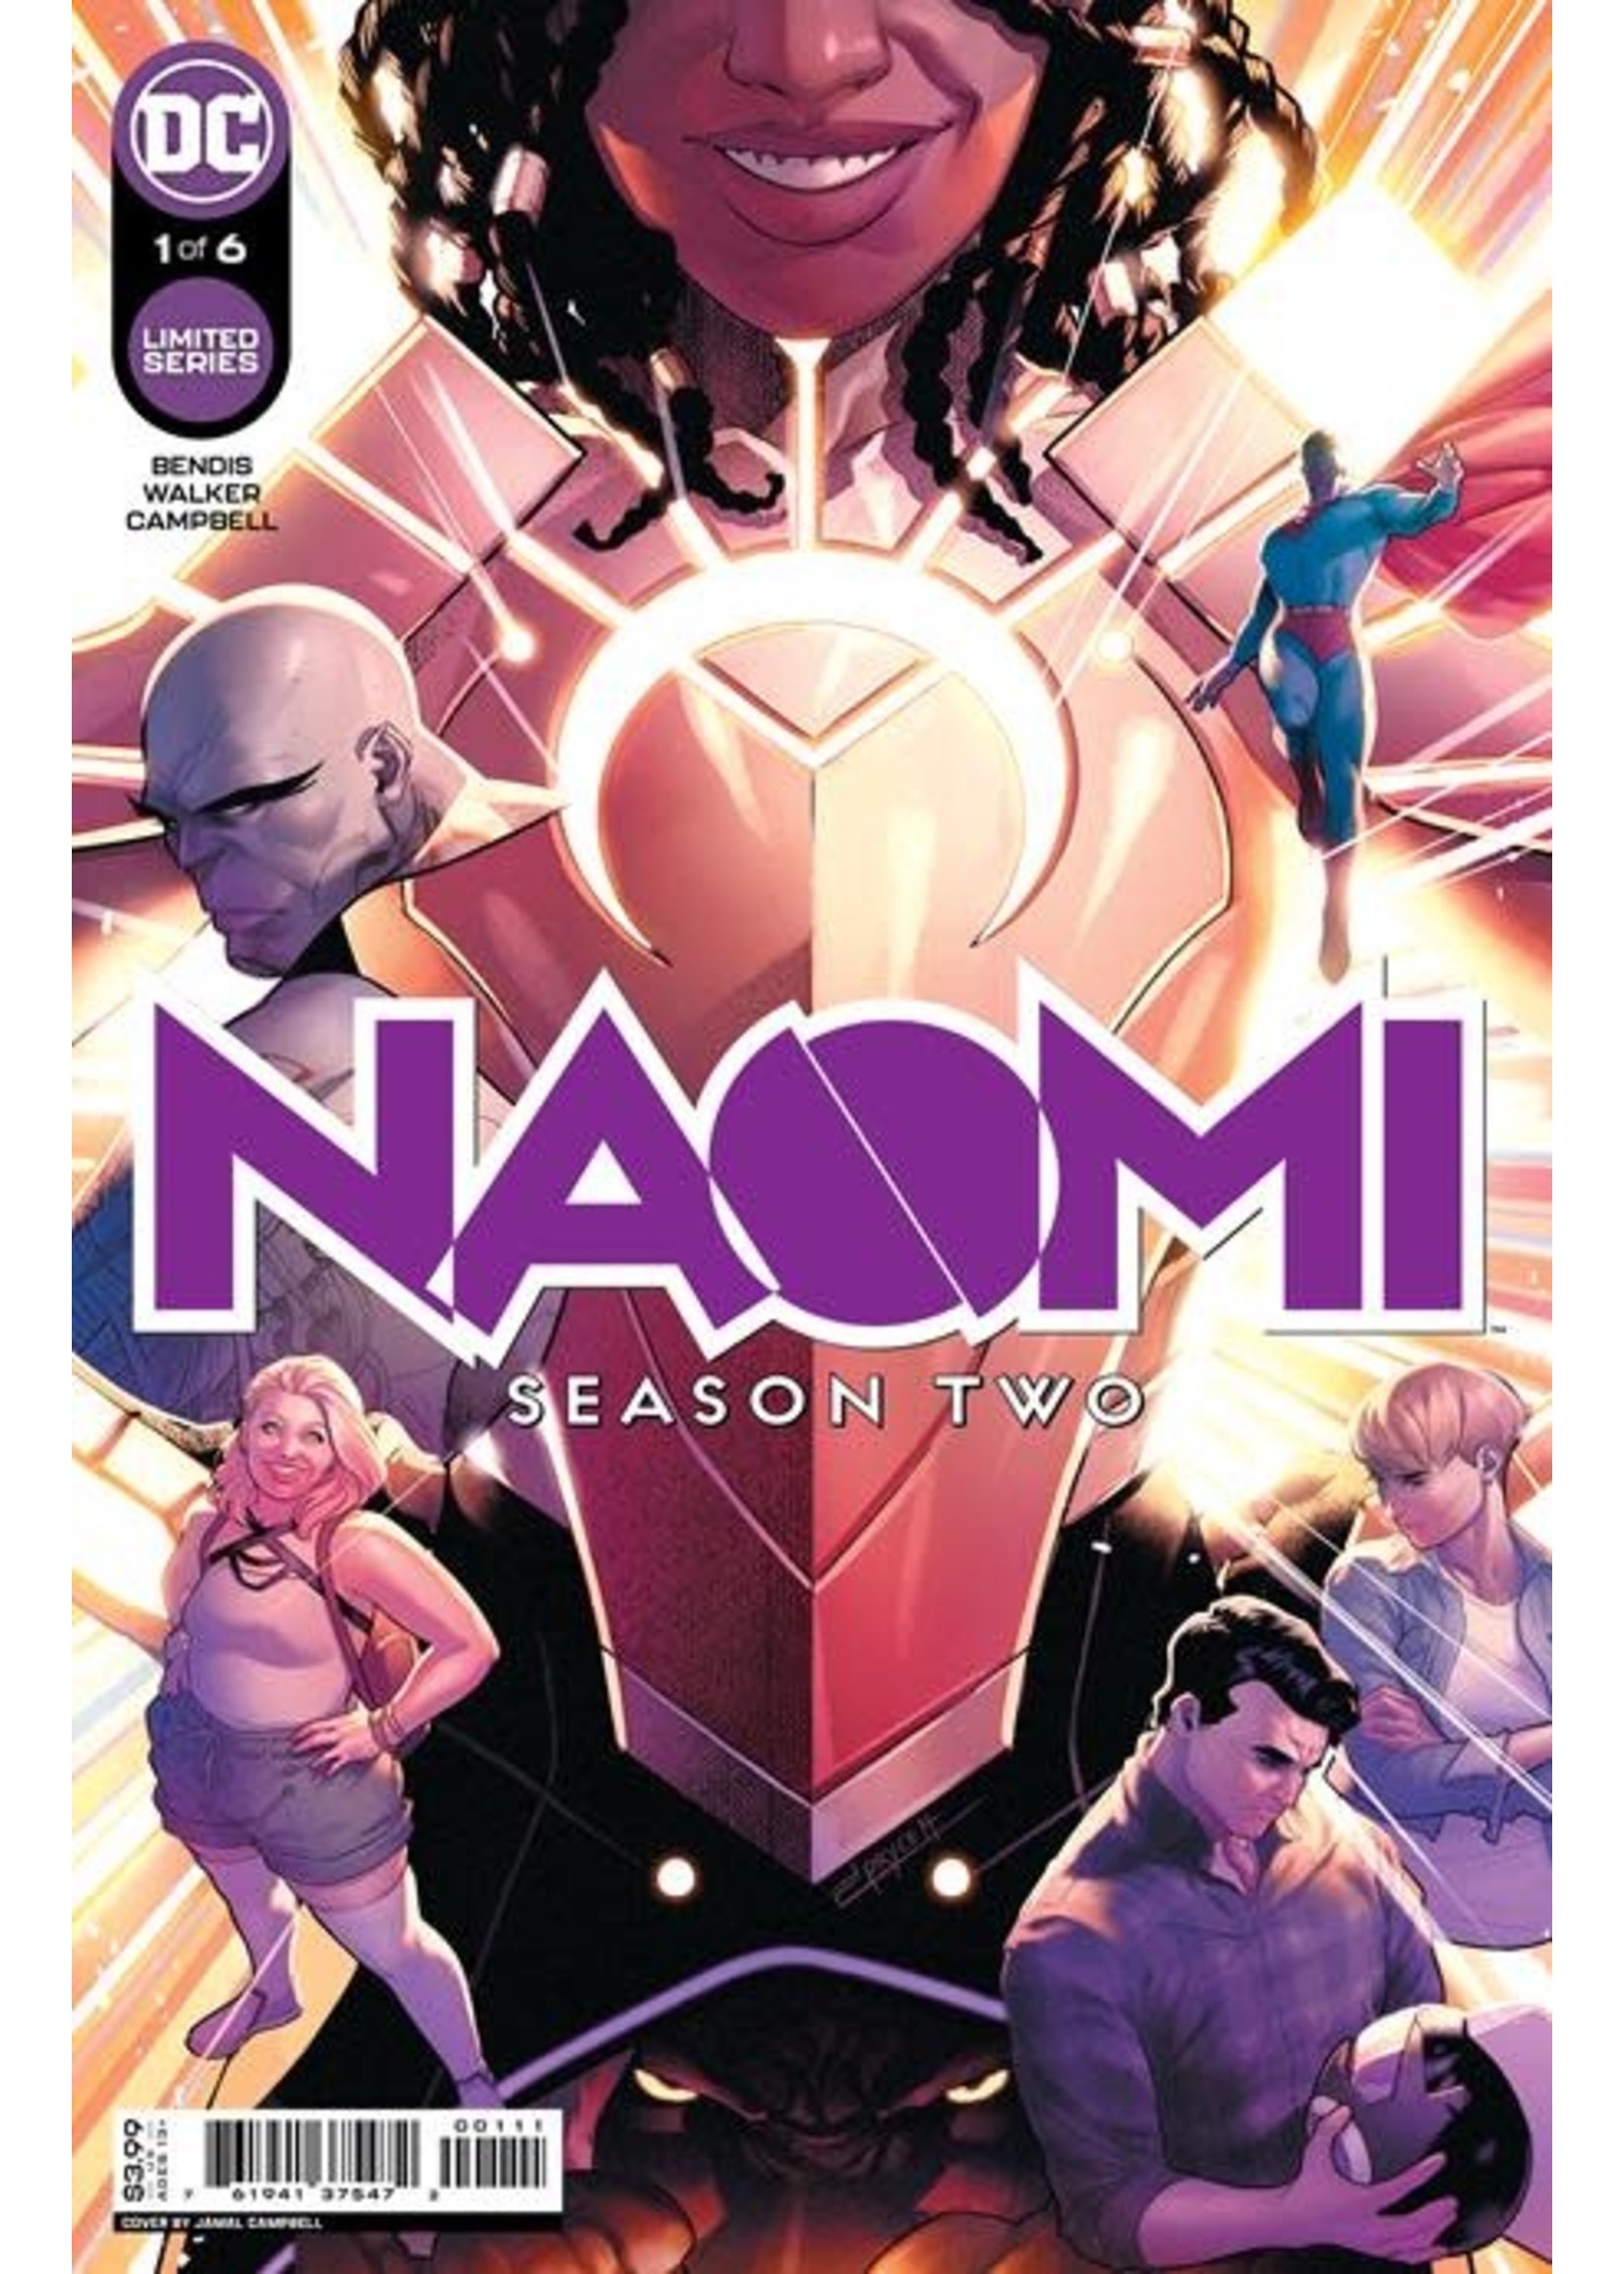 DC COMICS NAOMI SEASON 2 #1 (OF 6)